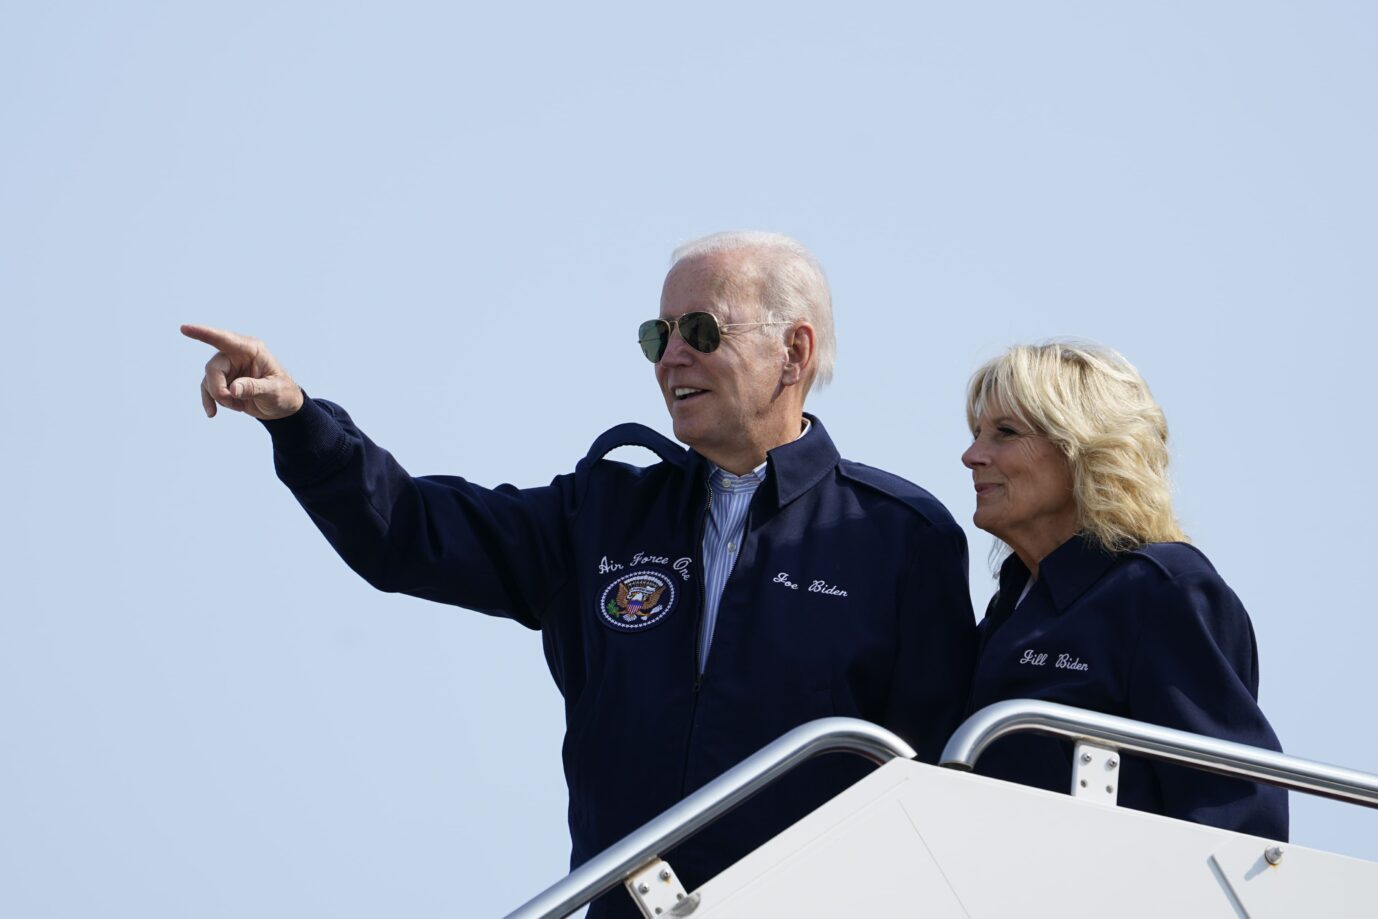 Neuerdings ohne Maske, weil Corona vorbei ist: US-Präsident Joe Biden mit First Lady Jill Biden beim Abflug nach London zu den Trauerfeierlichkeiten um die britische Königin Elisabeth II.